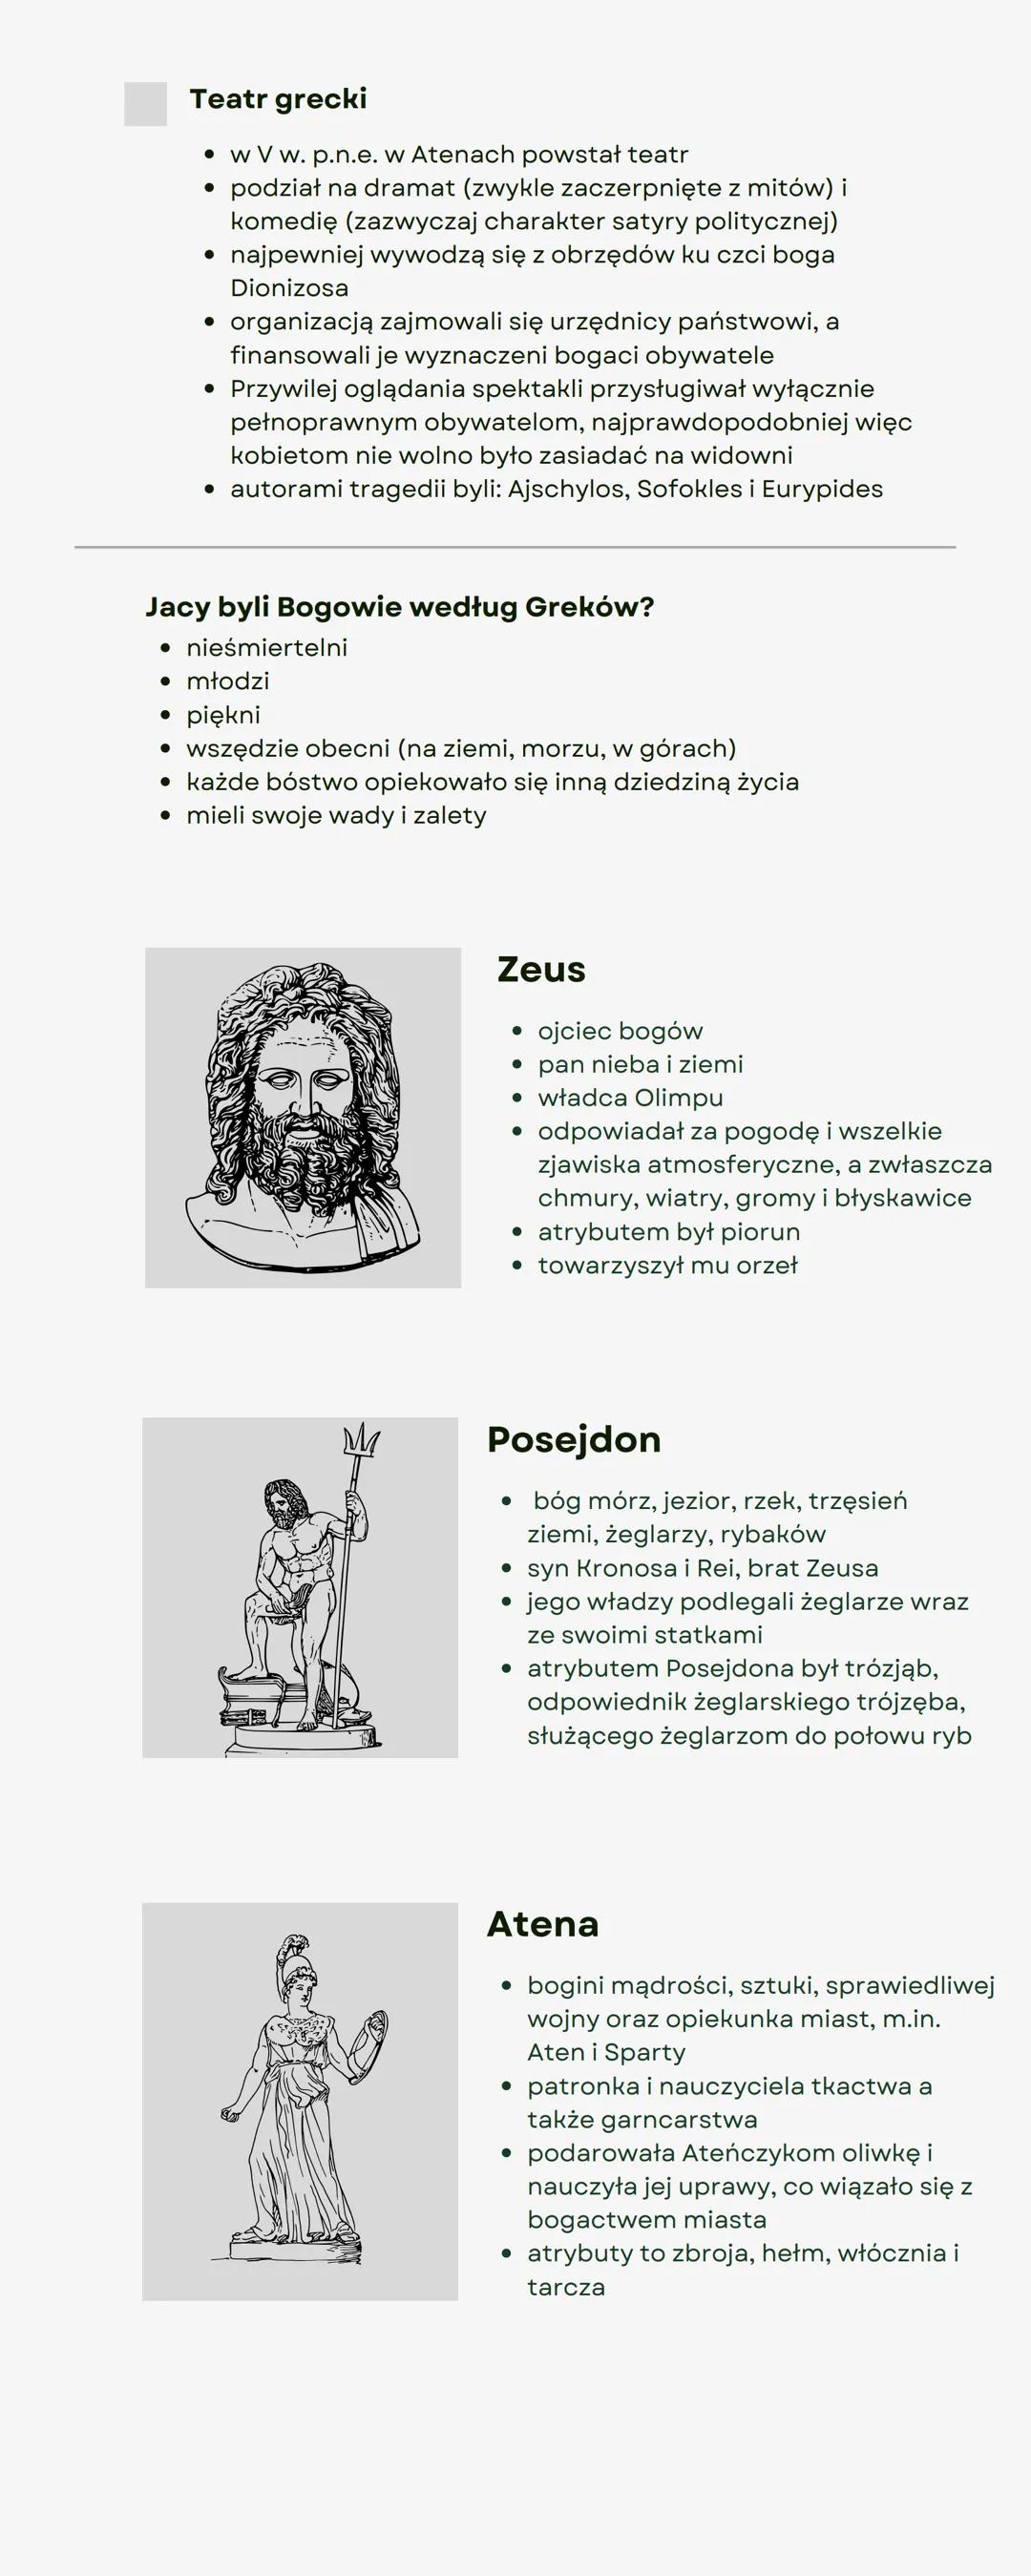 Kultura i
wierzenia
starożytnych
Greków
Jaka była religia Greków?
• politeistyczna- wiara w wielu bogów
●
mity- opowieści o bogach
• symbole